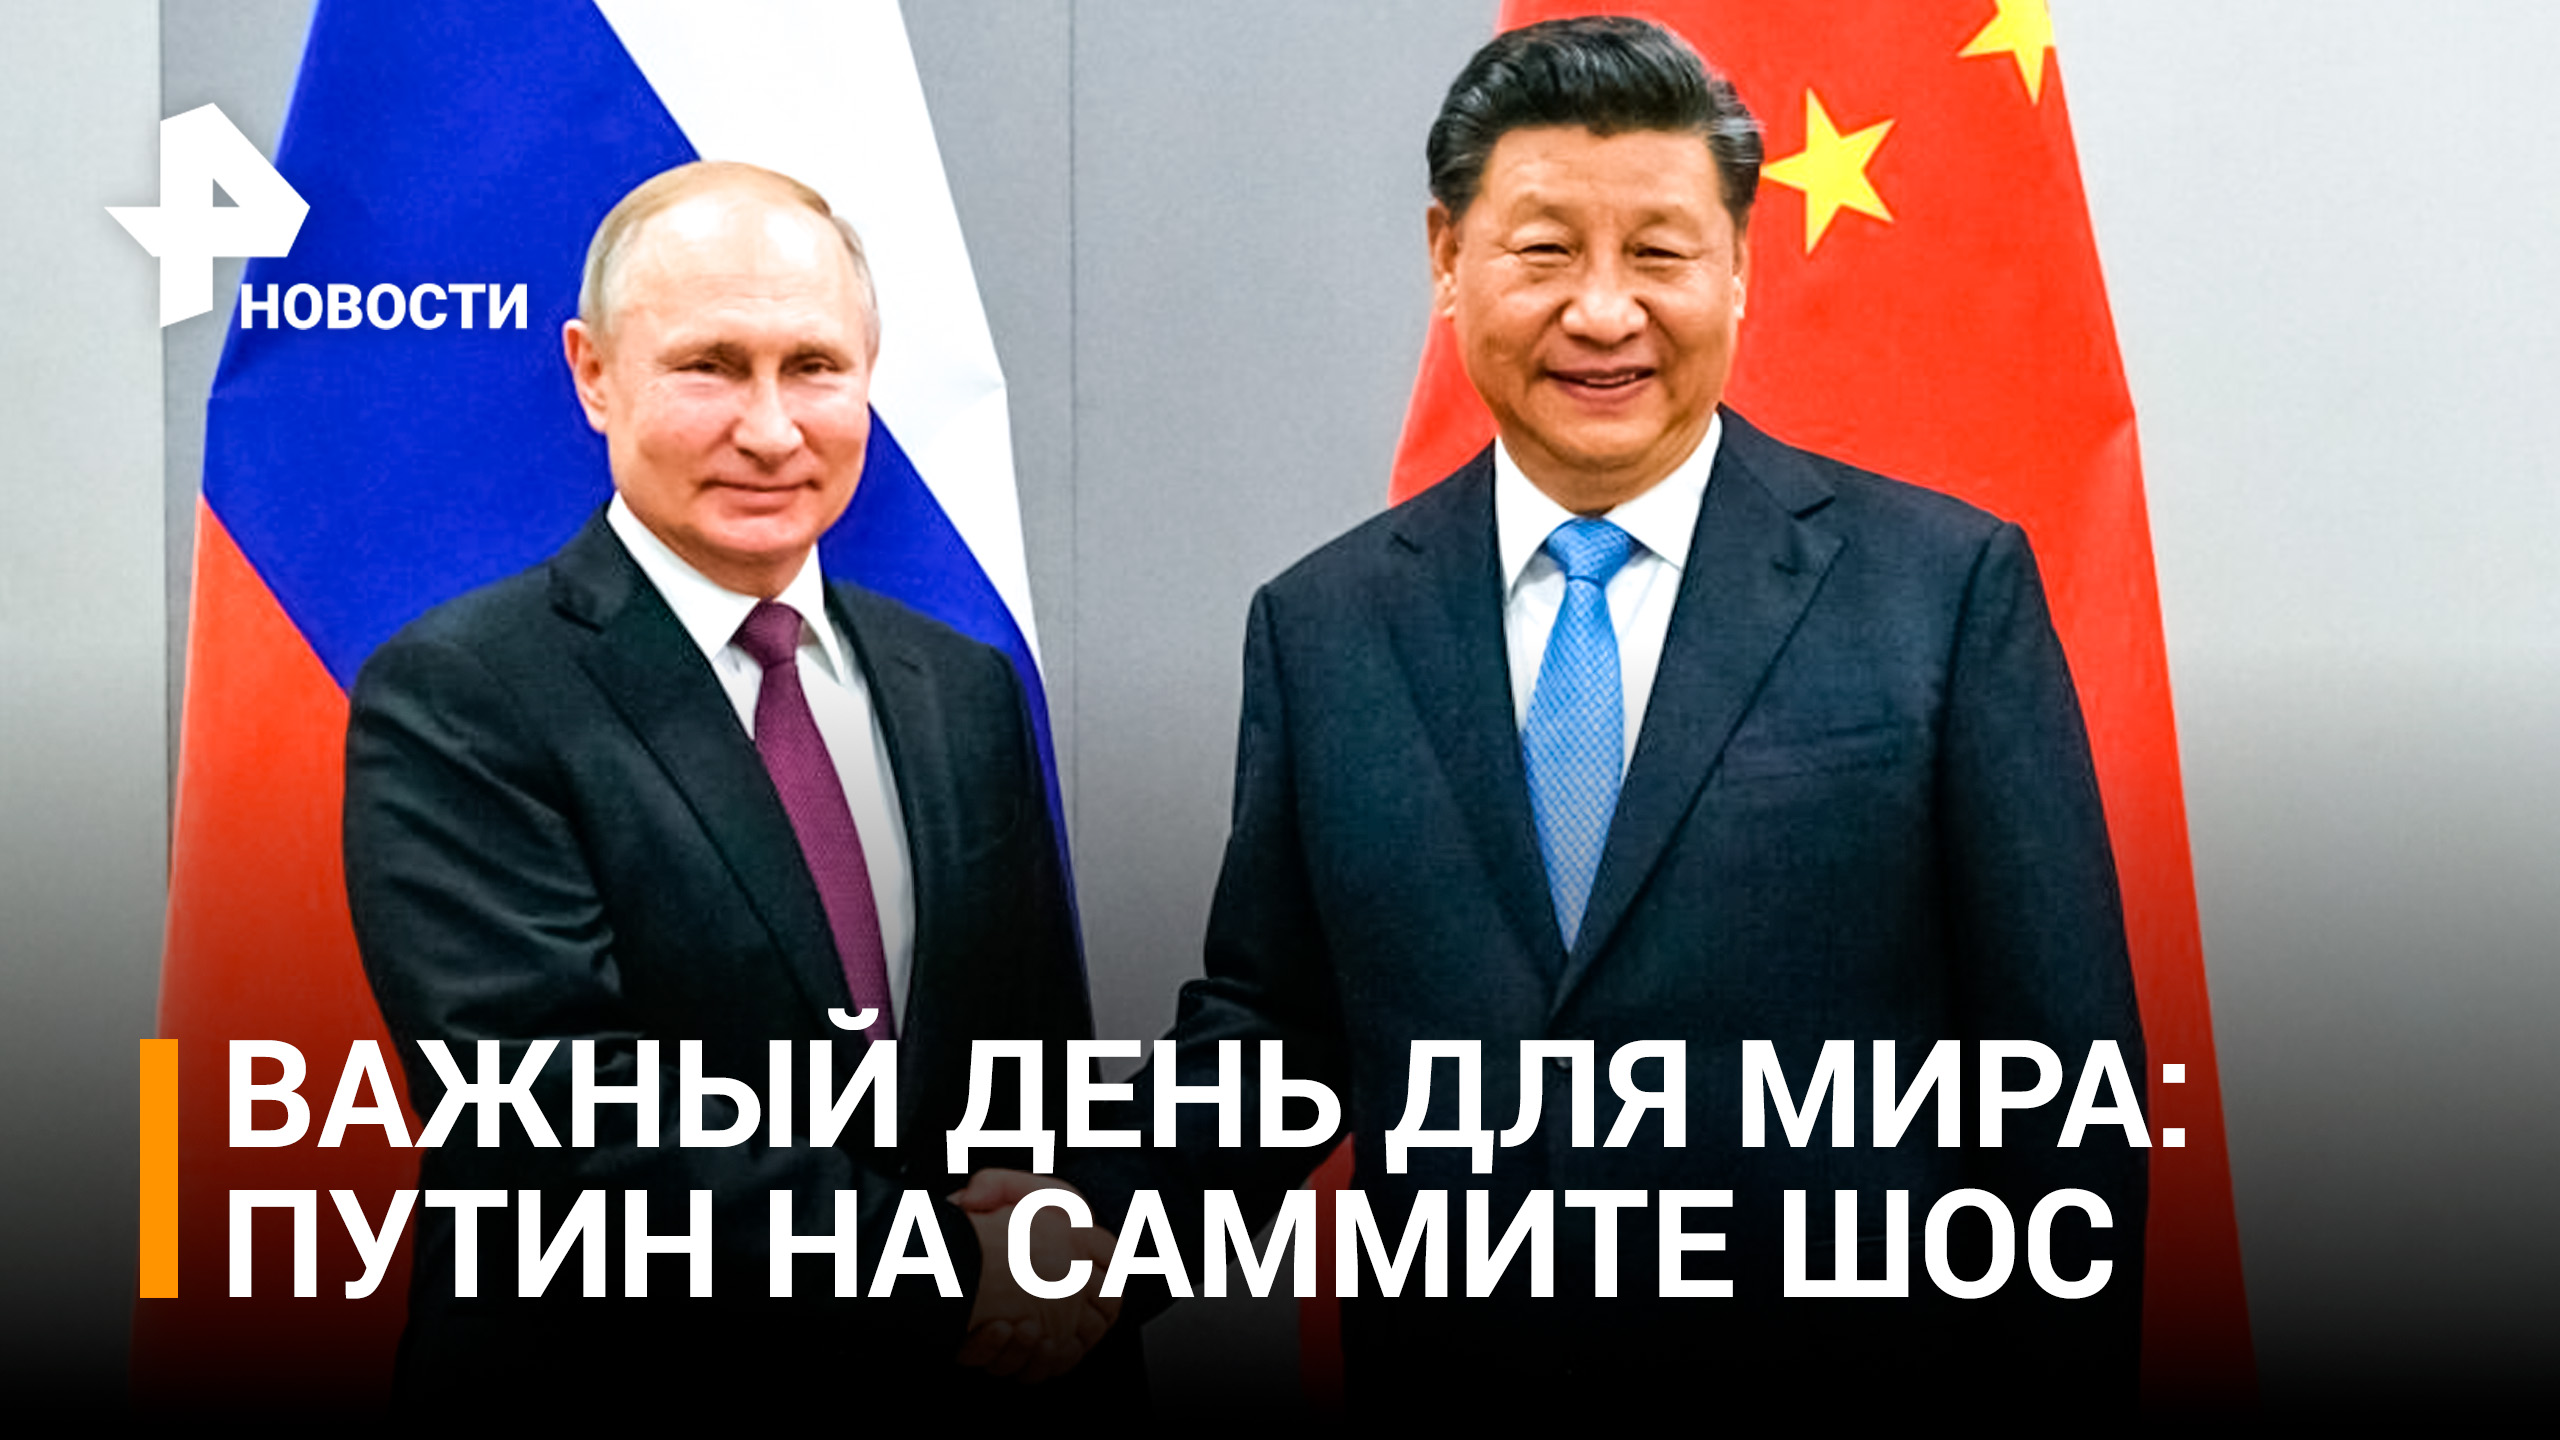 Си Цзиньпин назвал Путина дорогим и давним другом на саммите ШОС: первый и исторический день саммита